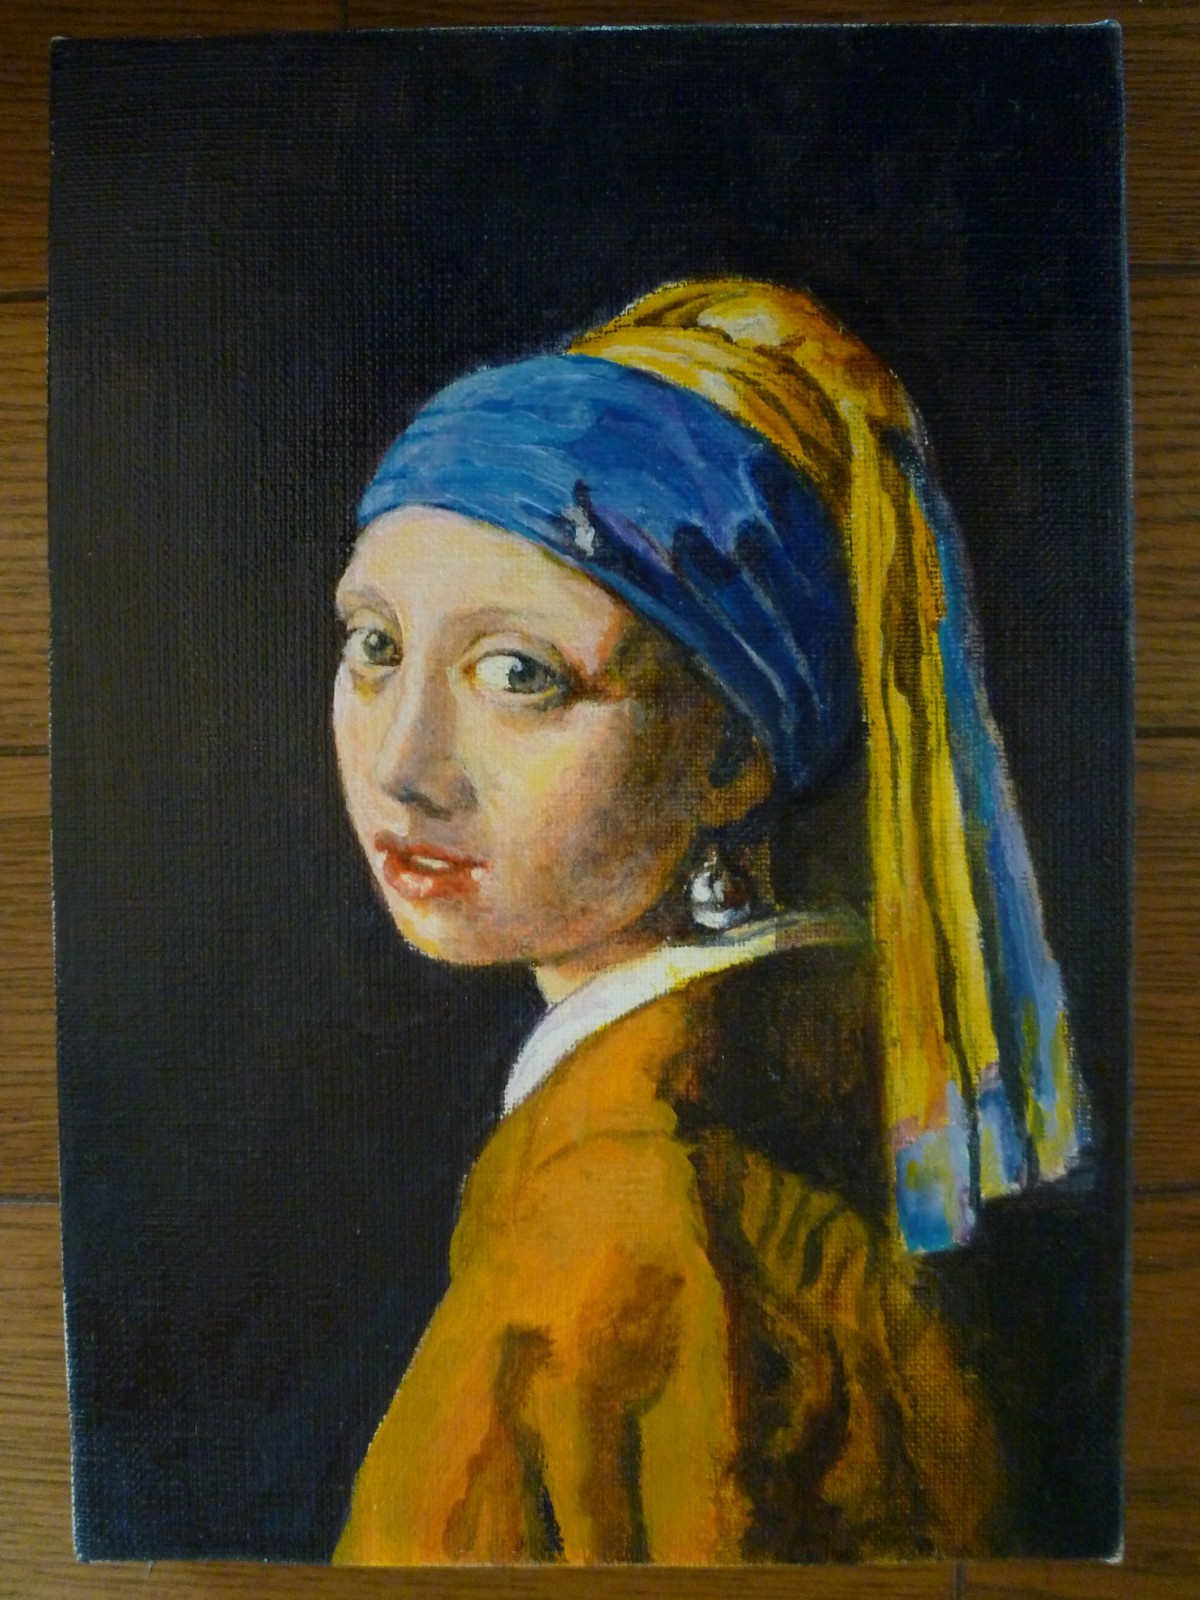 油絵 真珠の耳飾りの少女 美人画 絵画 油彩 人物画 肖像画 - 絵画